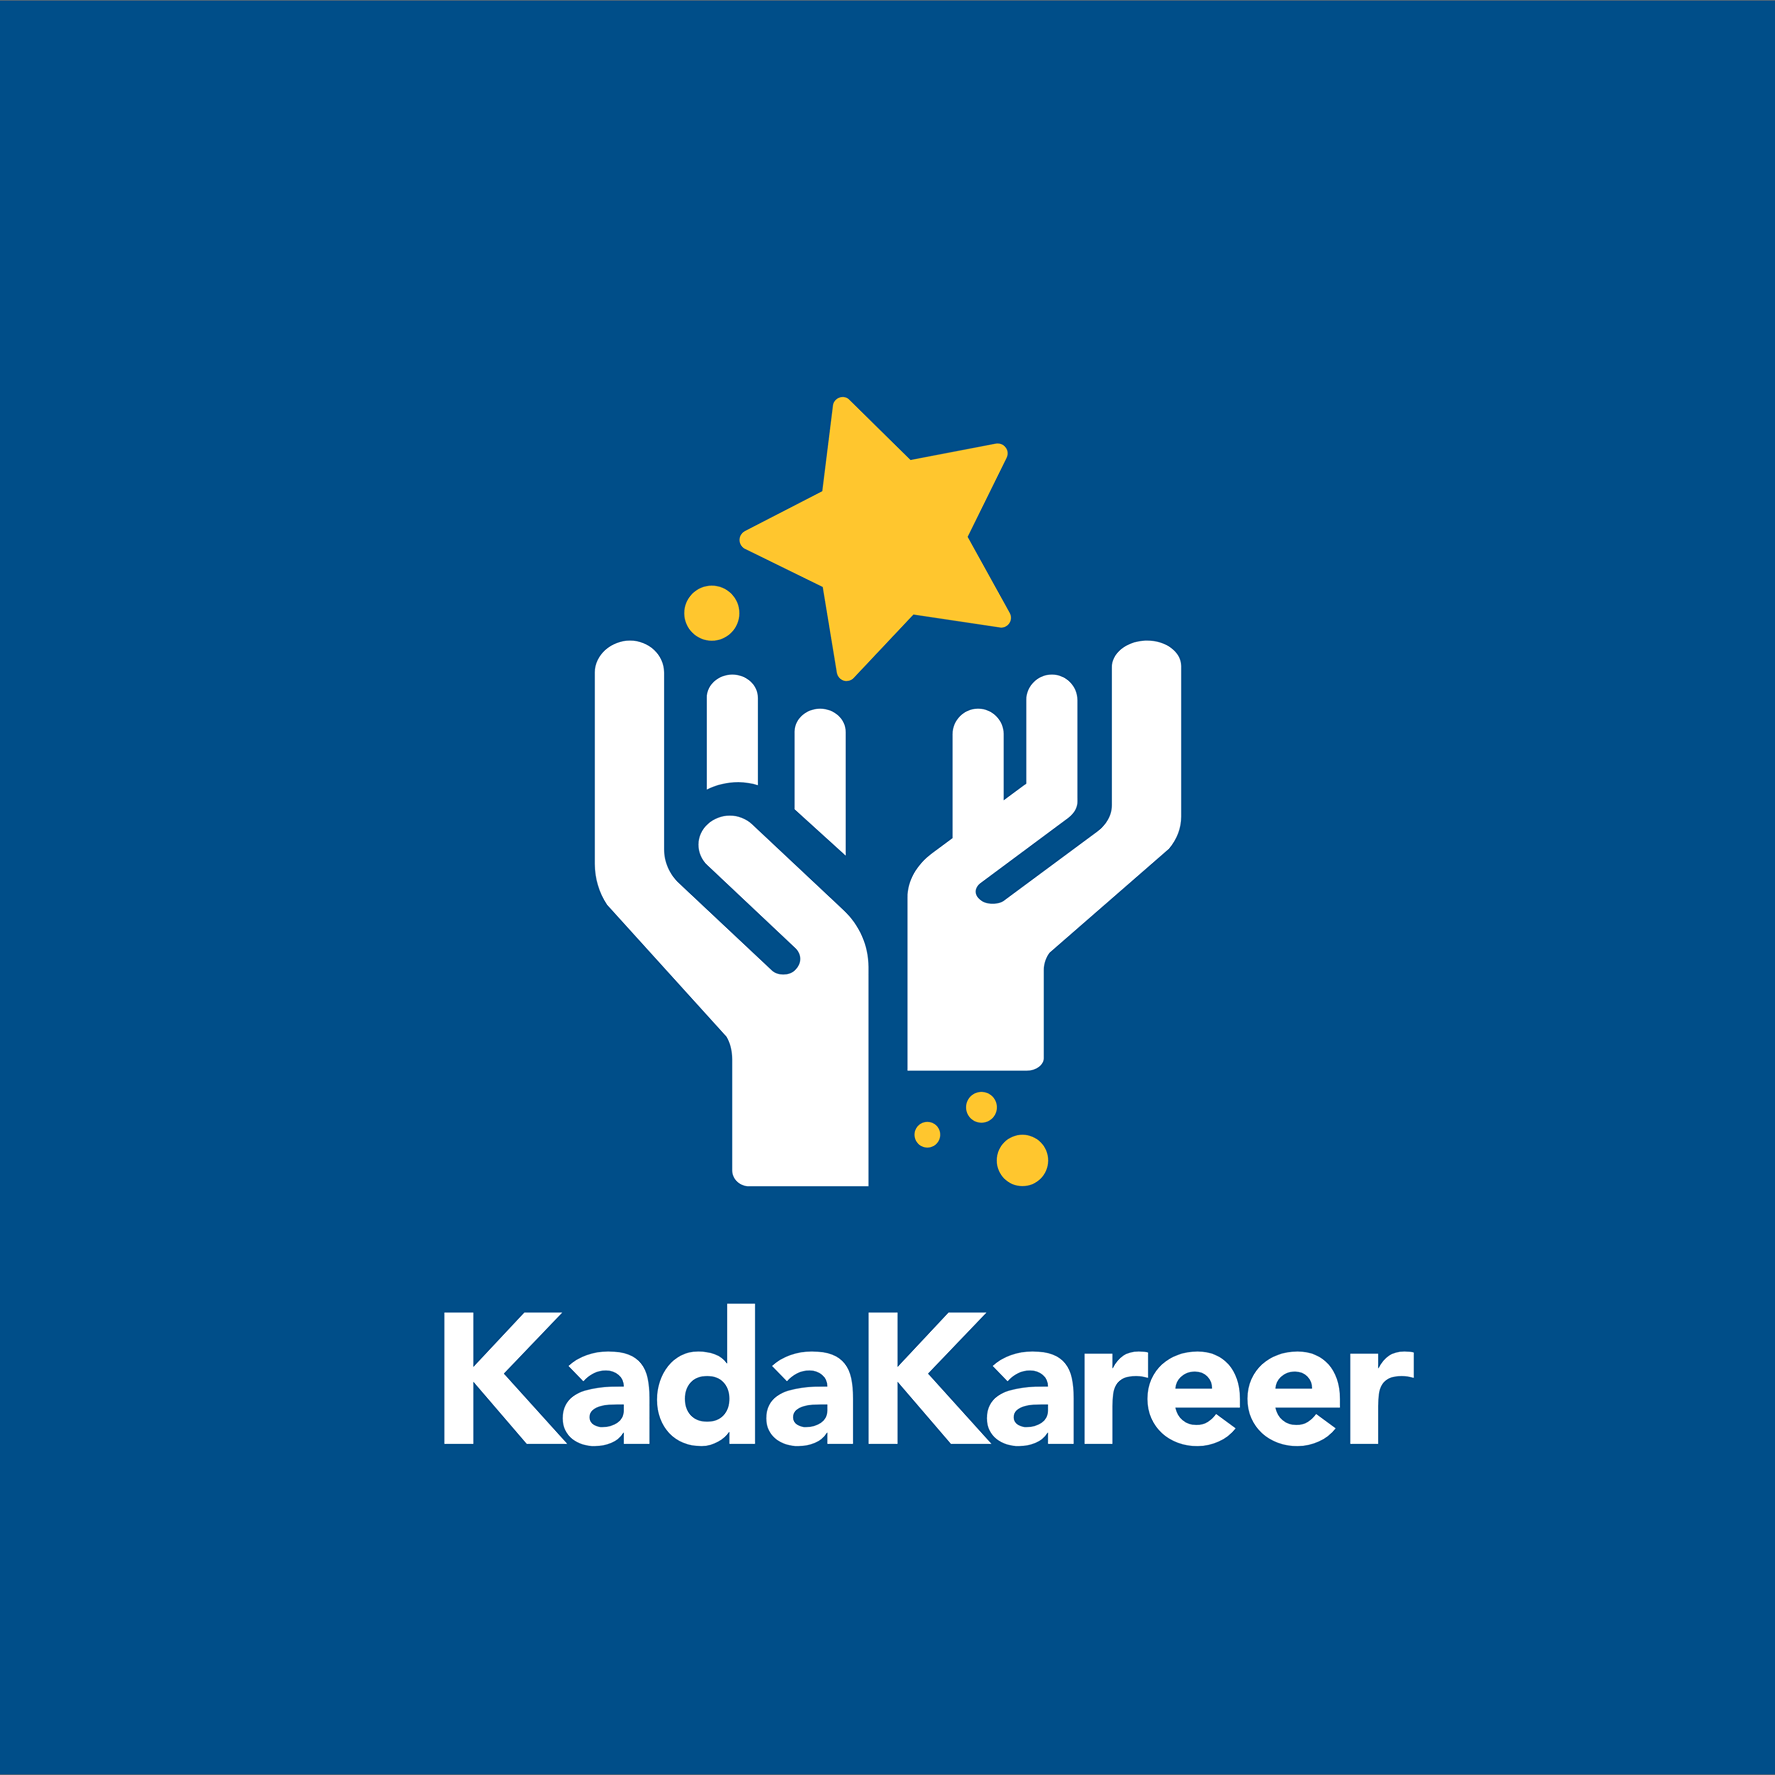 KadaKareer